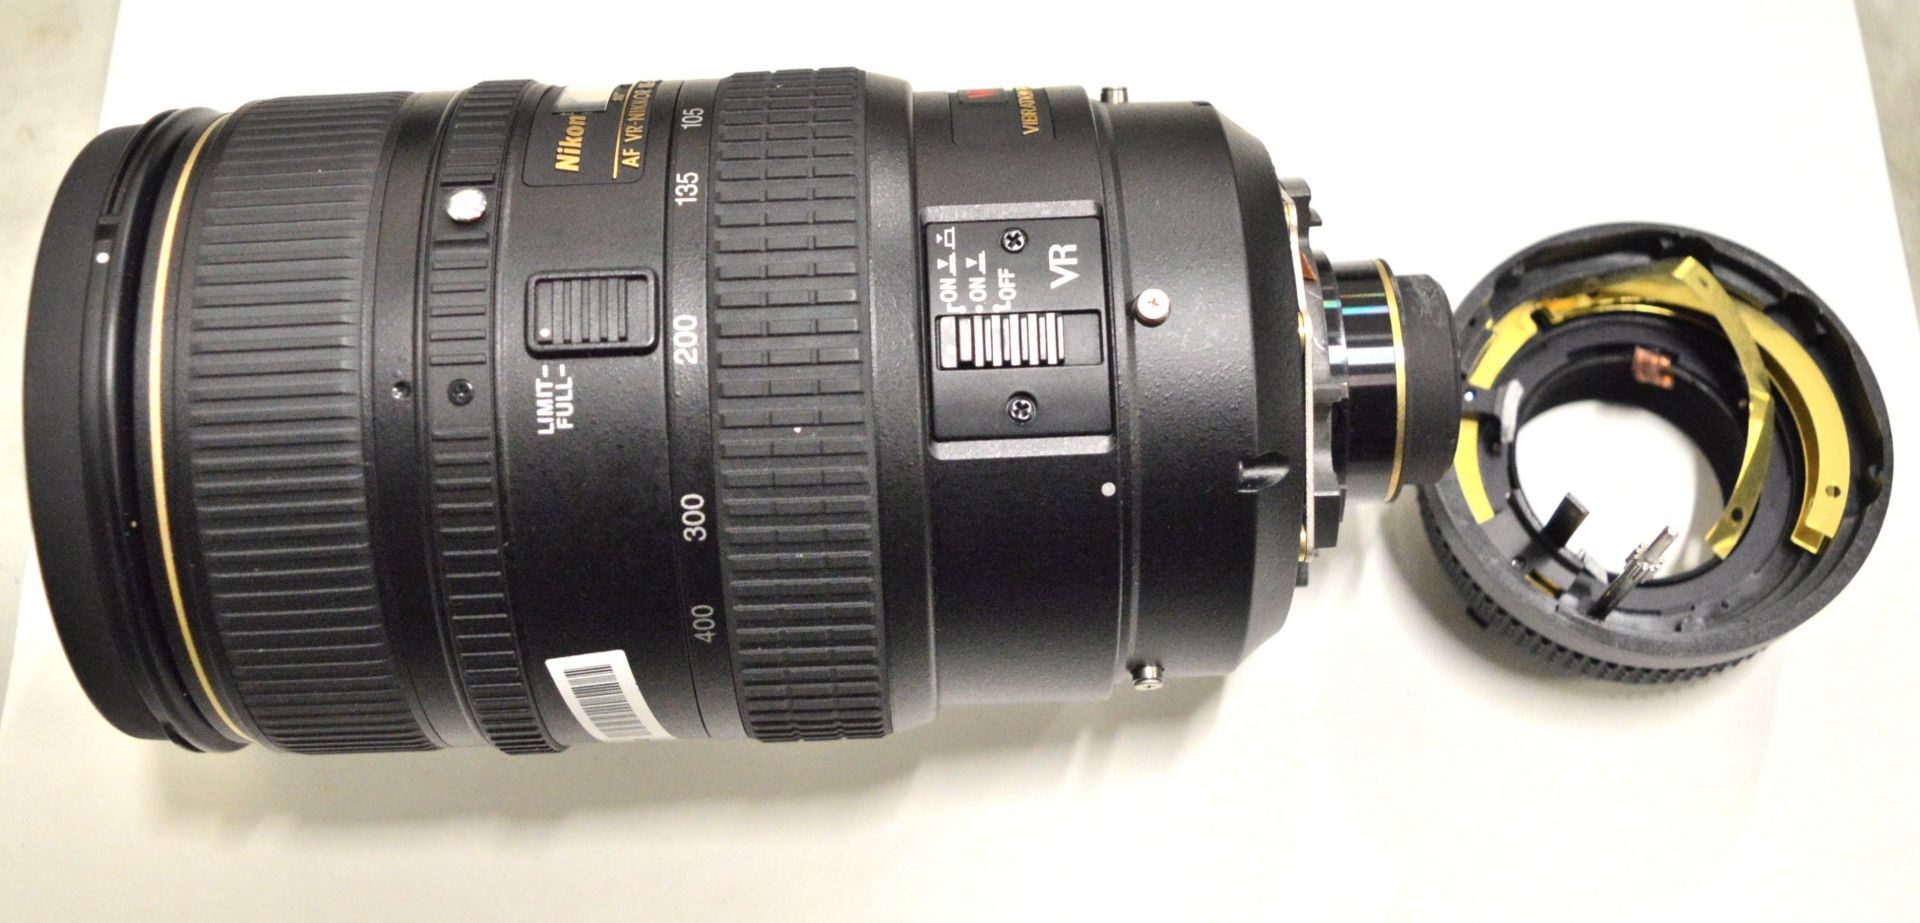 Nikon Lens AF-Nikkor 80-400mm 1:4.5-5.6D - Serial No. 412575. - Image 2 of 6